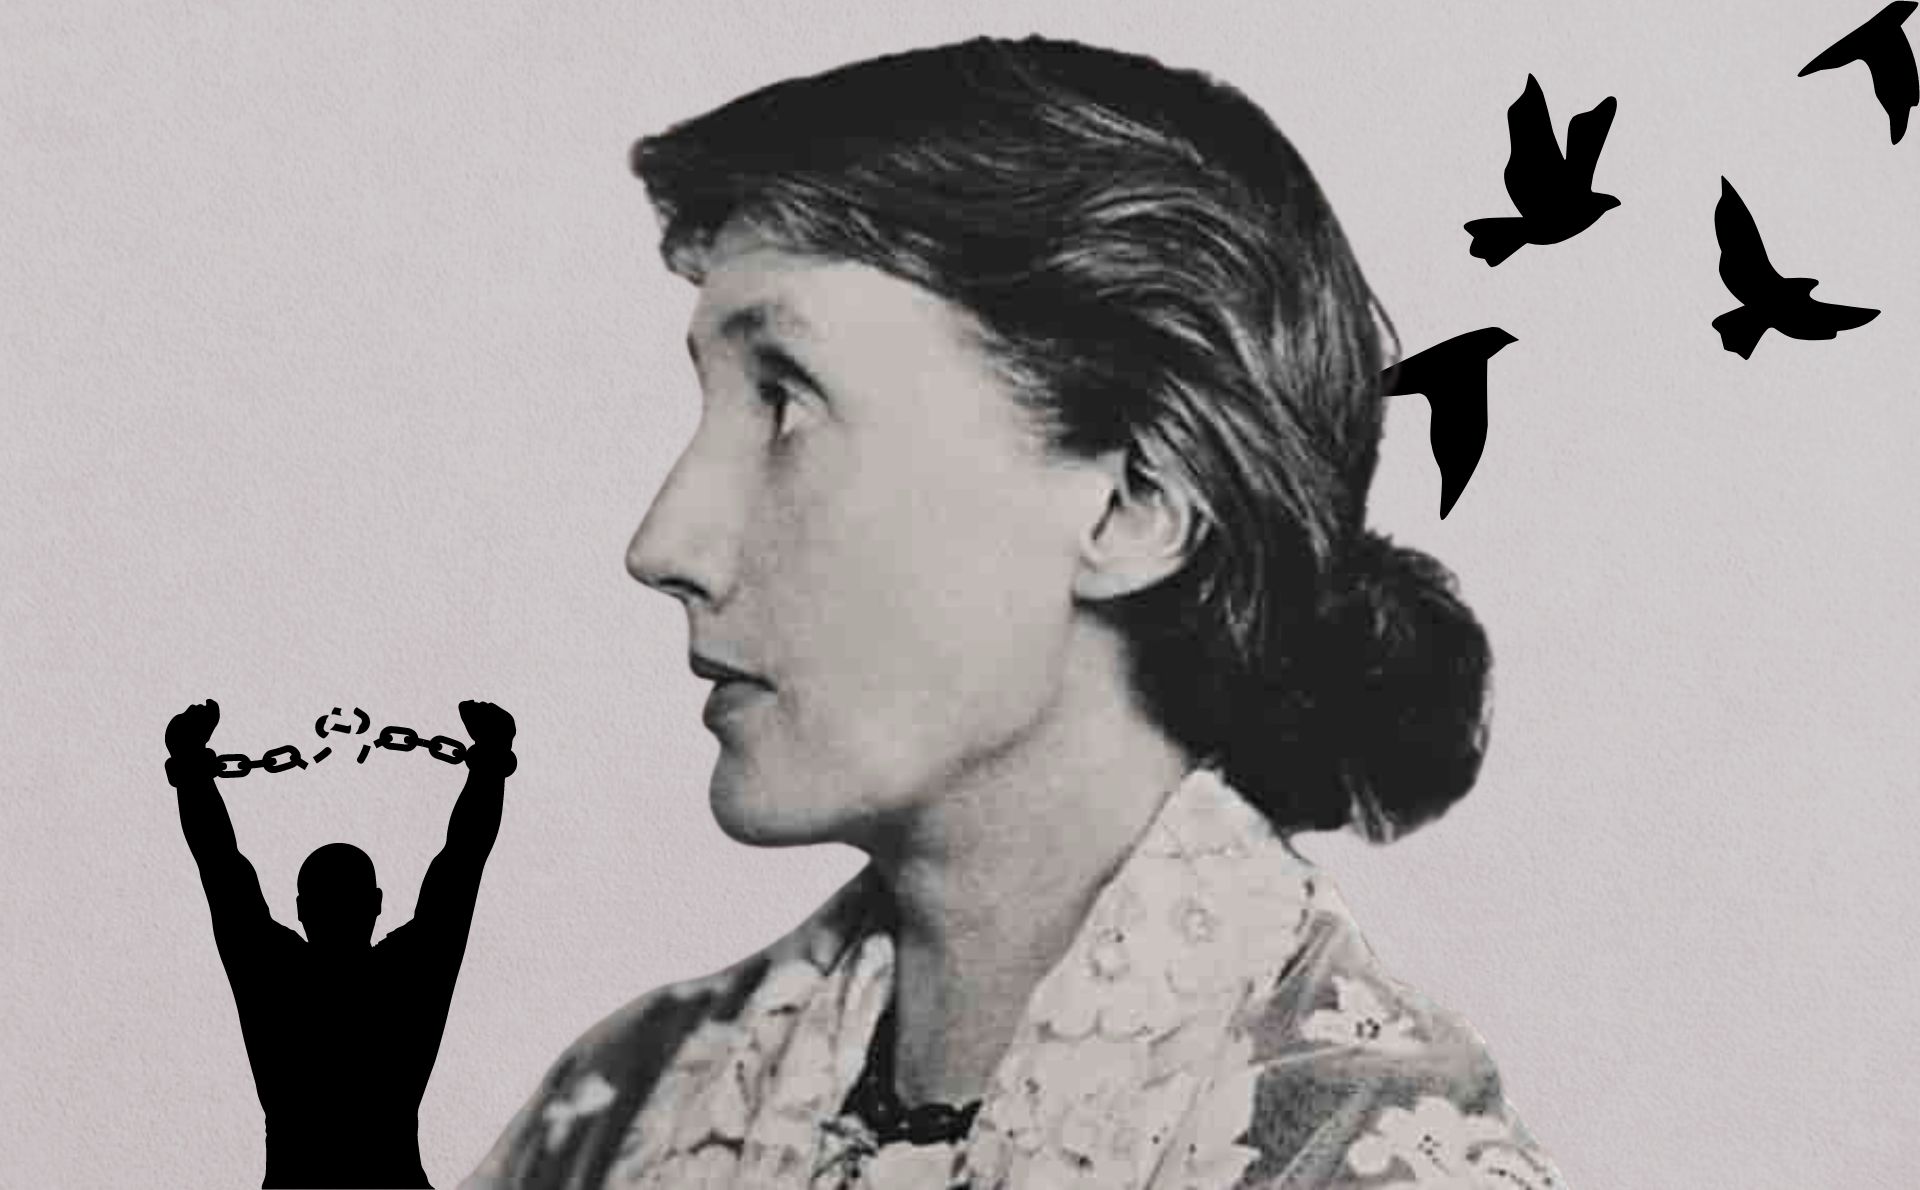 La libertad de Virginia Woolf fue una búsqueda constante en su vida. Una vida atravesada por el amor por los libros y los valores patriarcales contra los que se rebeló. De ese nudo emerge su pensamiento. Imagen de dominio público (licencia CC 1.0), extraída de Store Norske Leksikon y editada con elementos de Canva Pro.